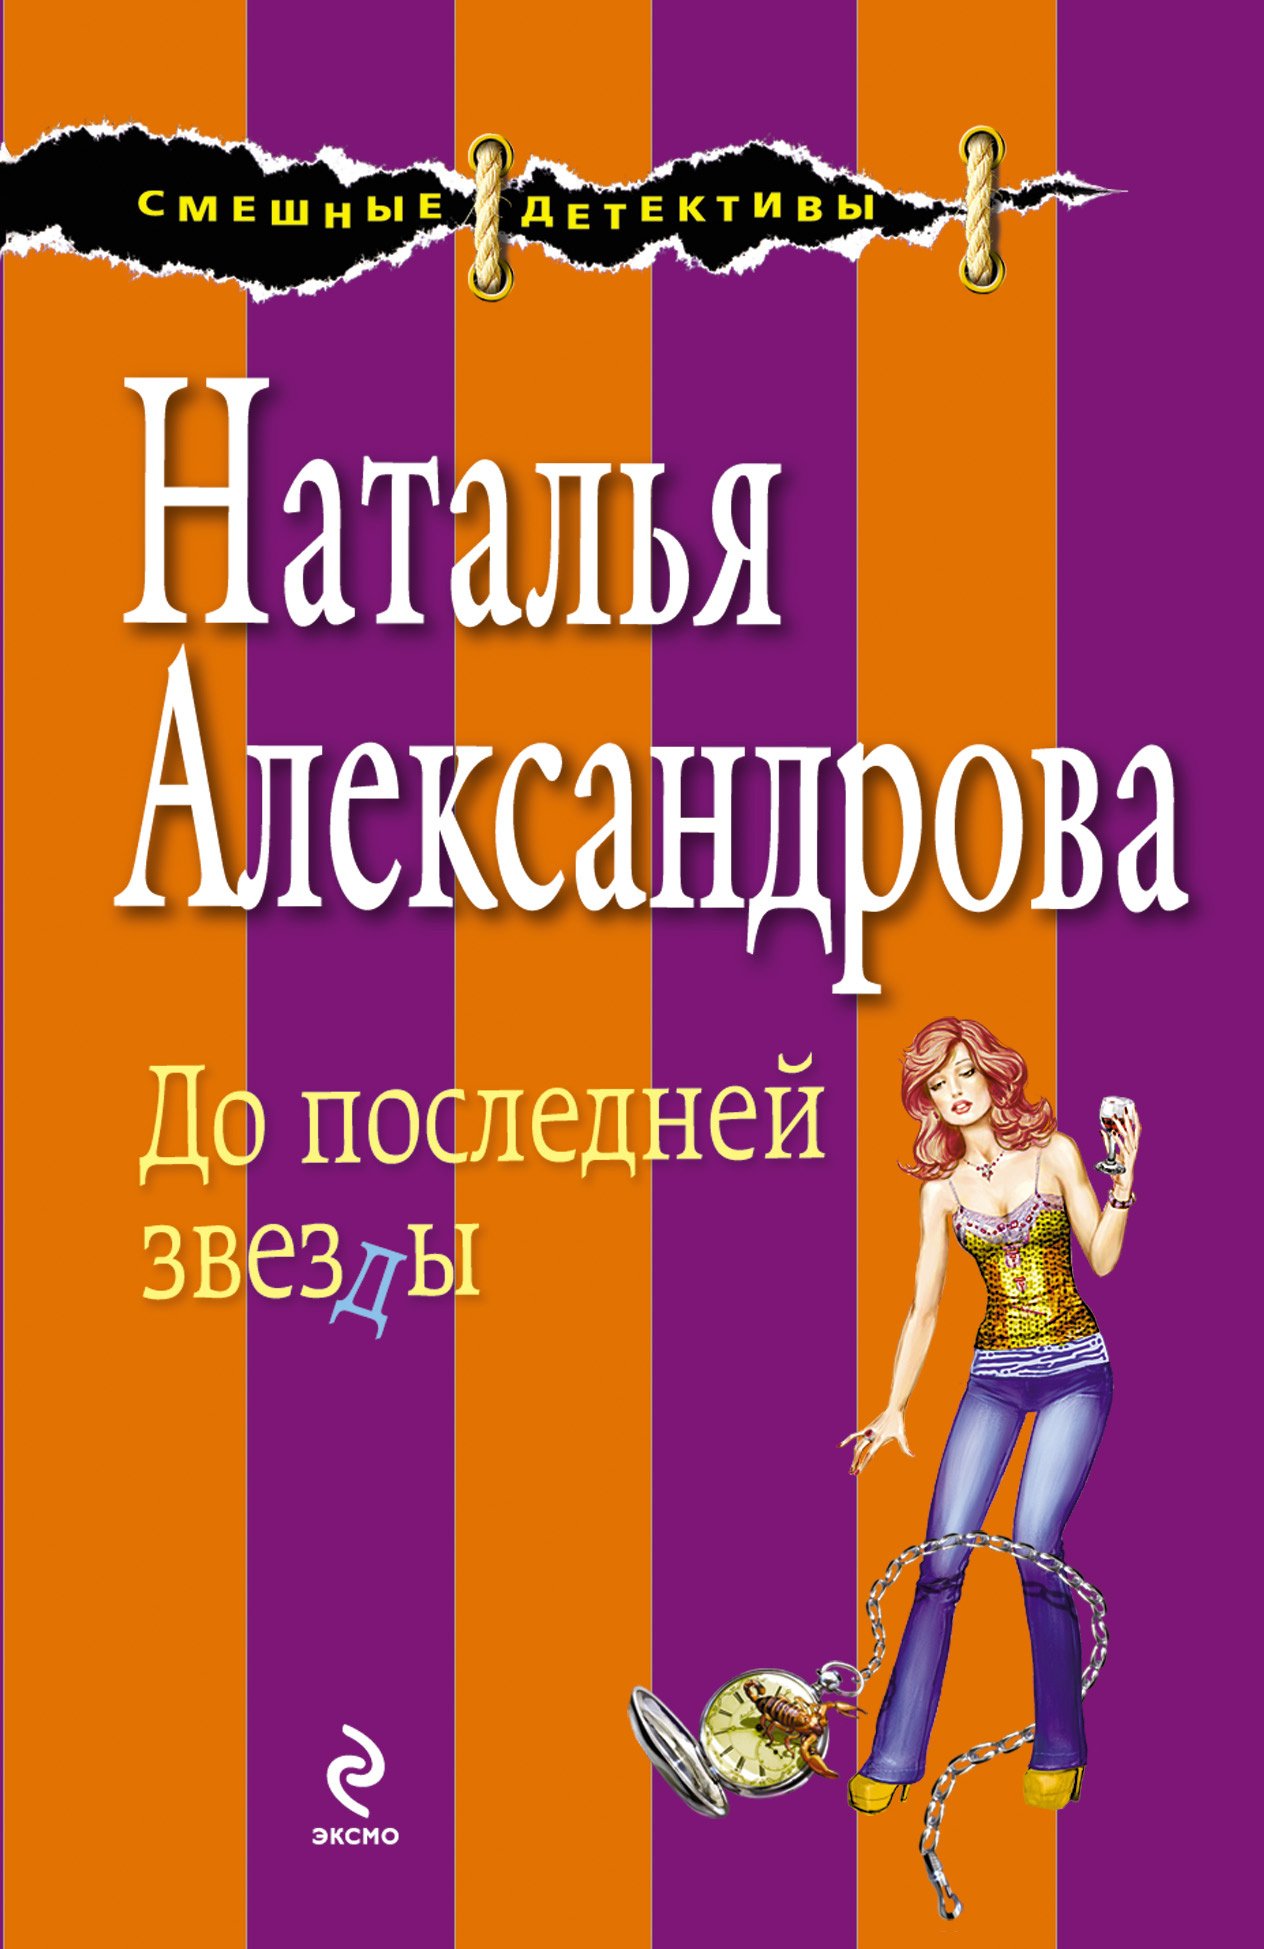 Иронические детективы александрова. Обложки книг Натальи Александровой.